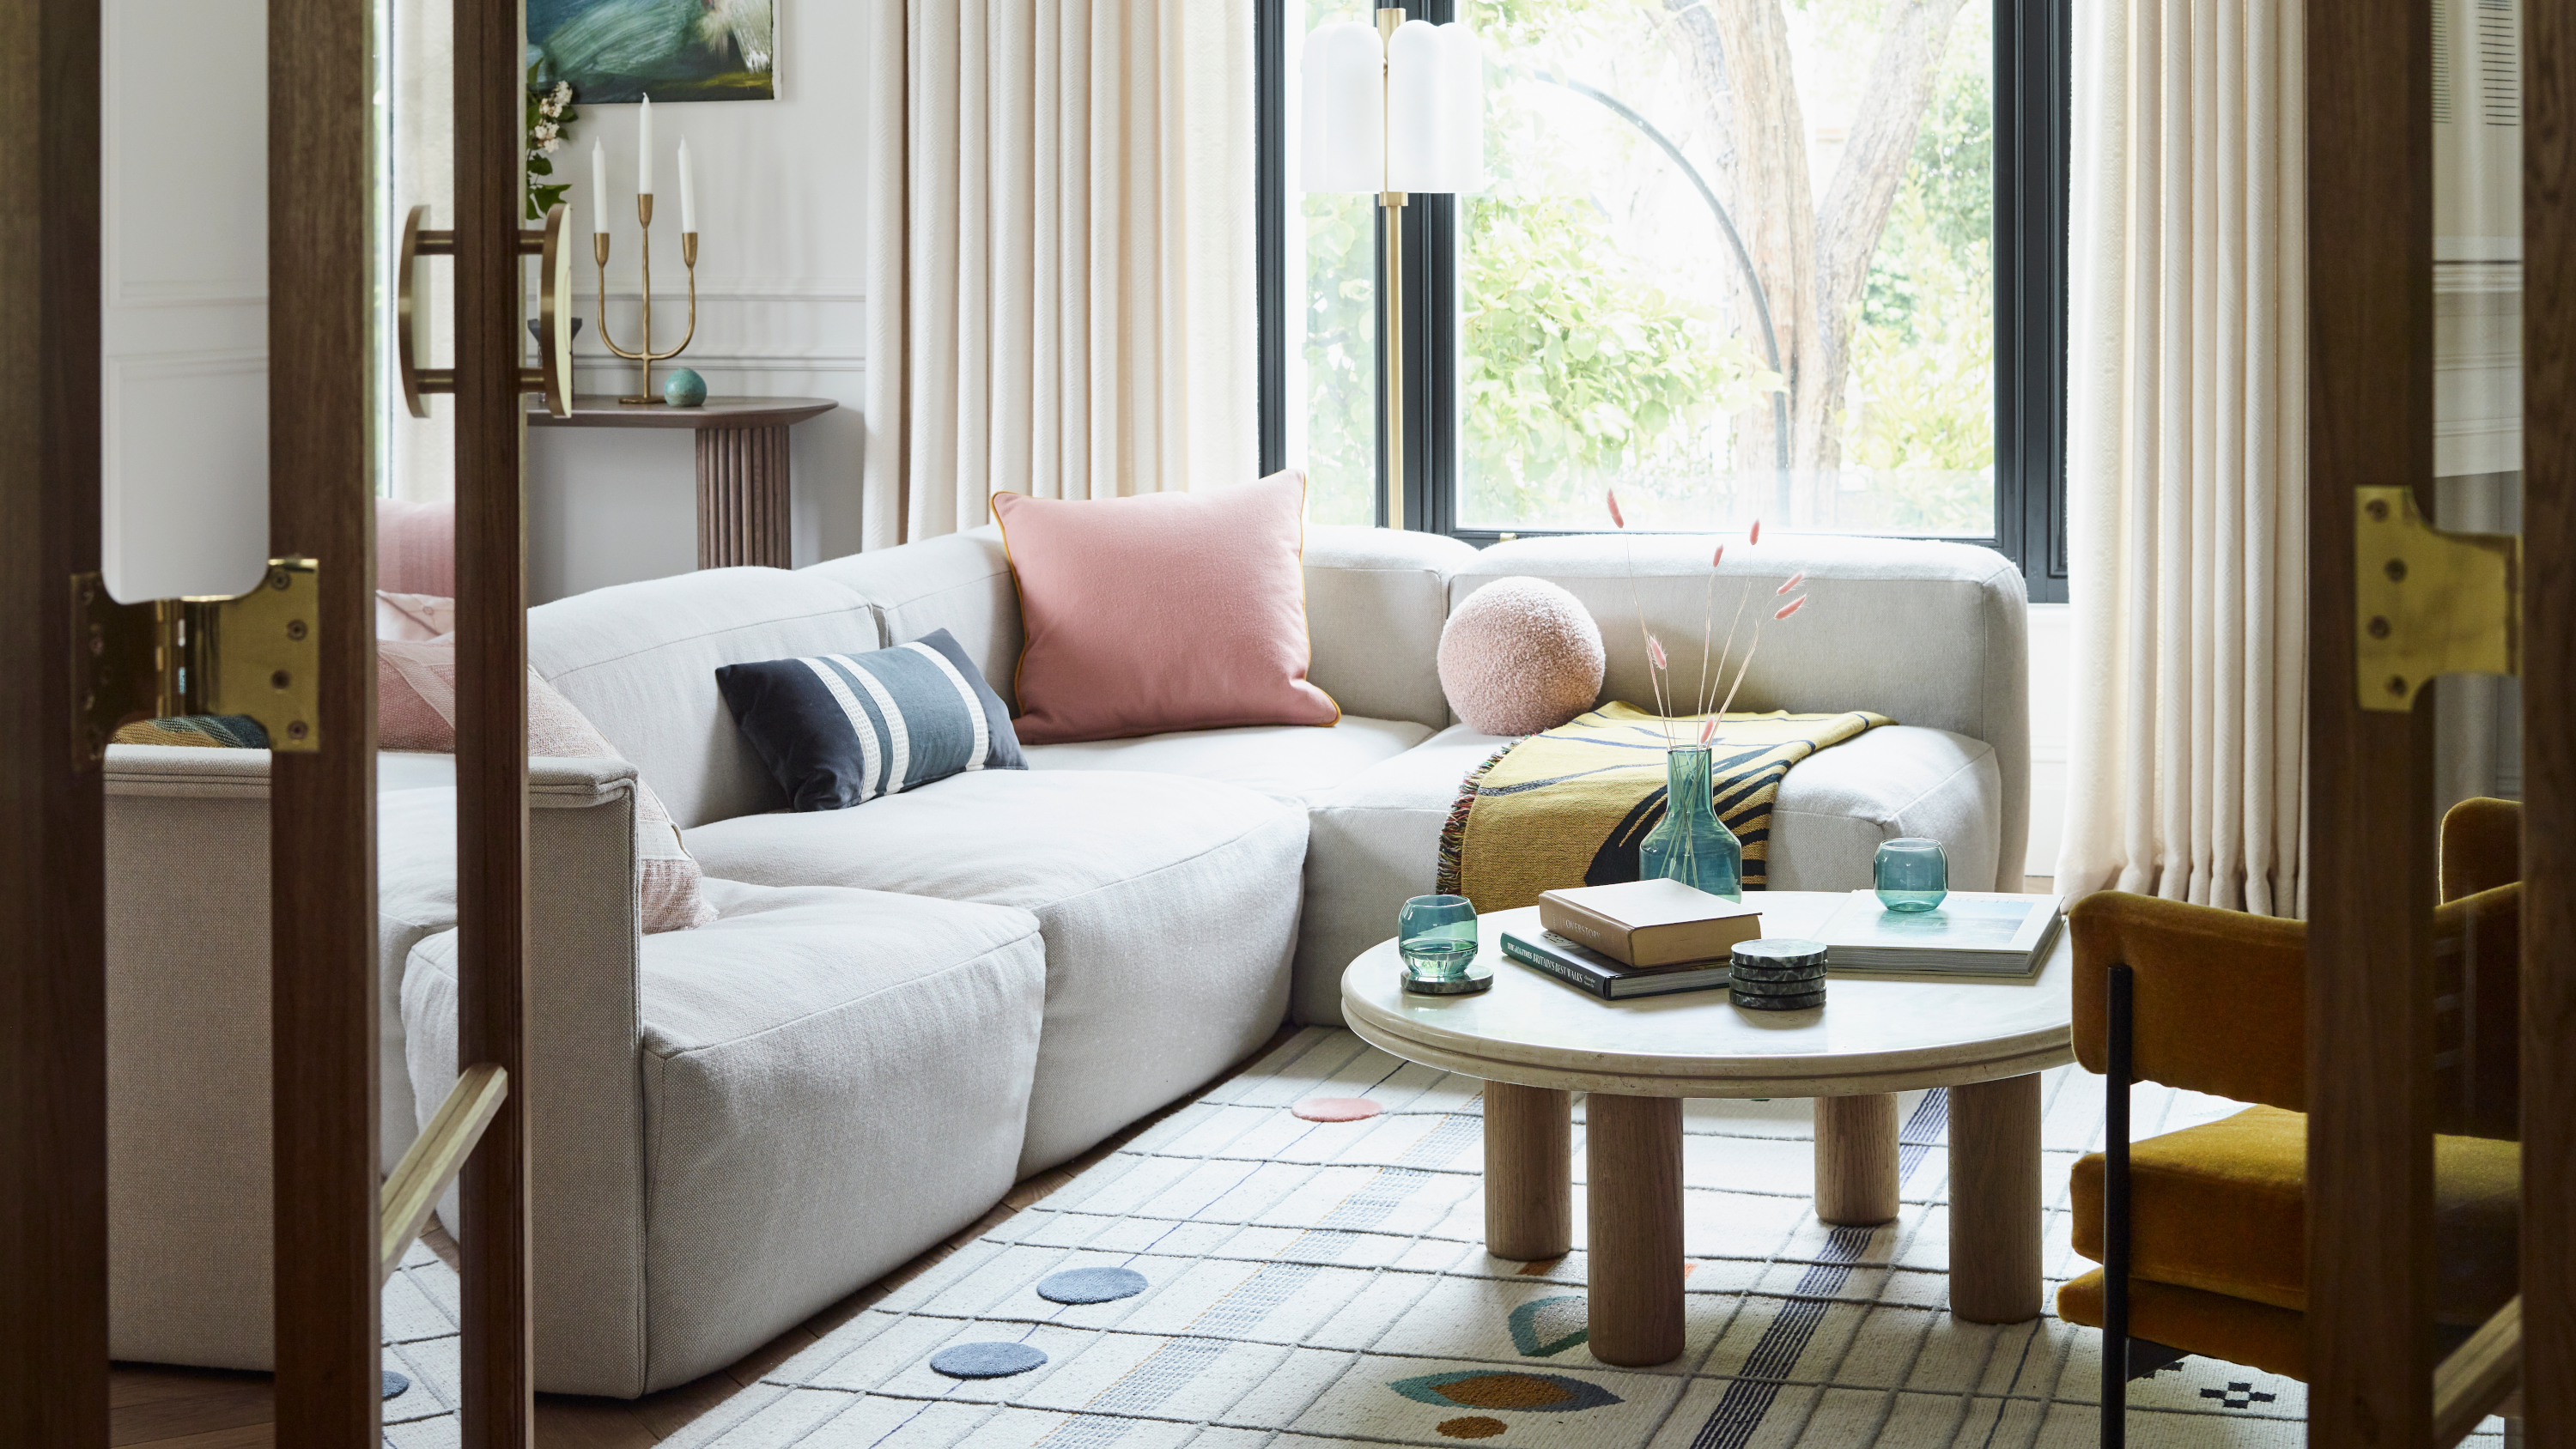 Sofa: Ngày nay, sofa không chỉ là một món đồ nội thất bình thường mà còn đóng vai trò quan trọng trong tạo nên không gian sống đẹp và sang trọng. Nếu bạn đang tìm kiếm một chiếc sofa đẹp, chất lượng và phong cách thì đến ngay Crate & Barrel. Tại đó, bạn sẽ có nhiều sự lựa chọn về chất liệu, màu sắc và kiểu dáng để tạo ra không gian sống độc đáo và đầy cá tính.